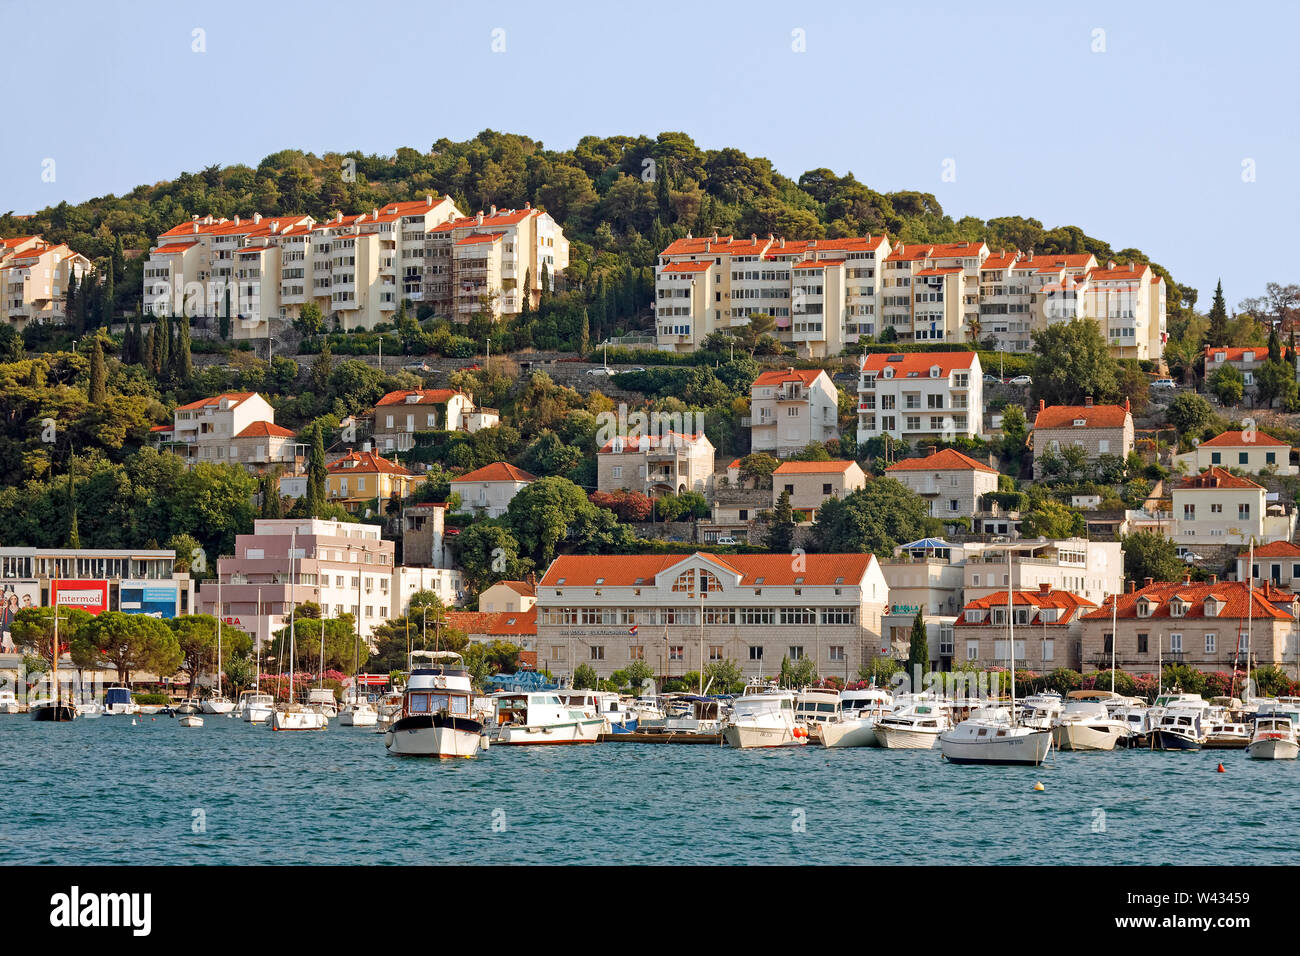 Scena costiere, marina, barche, edifici, hillside, Dalmazia, mare adriatico, Porto di Dubrovnik; Gruz; Croazia; Europa; estate, orizzontale Foto Stock